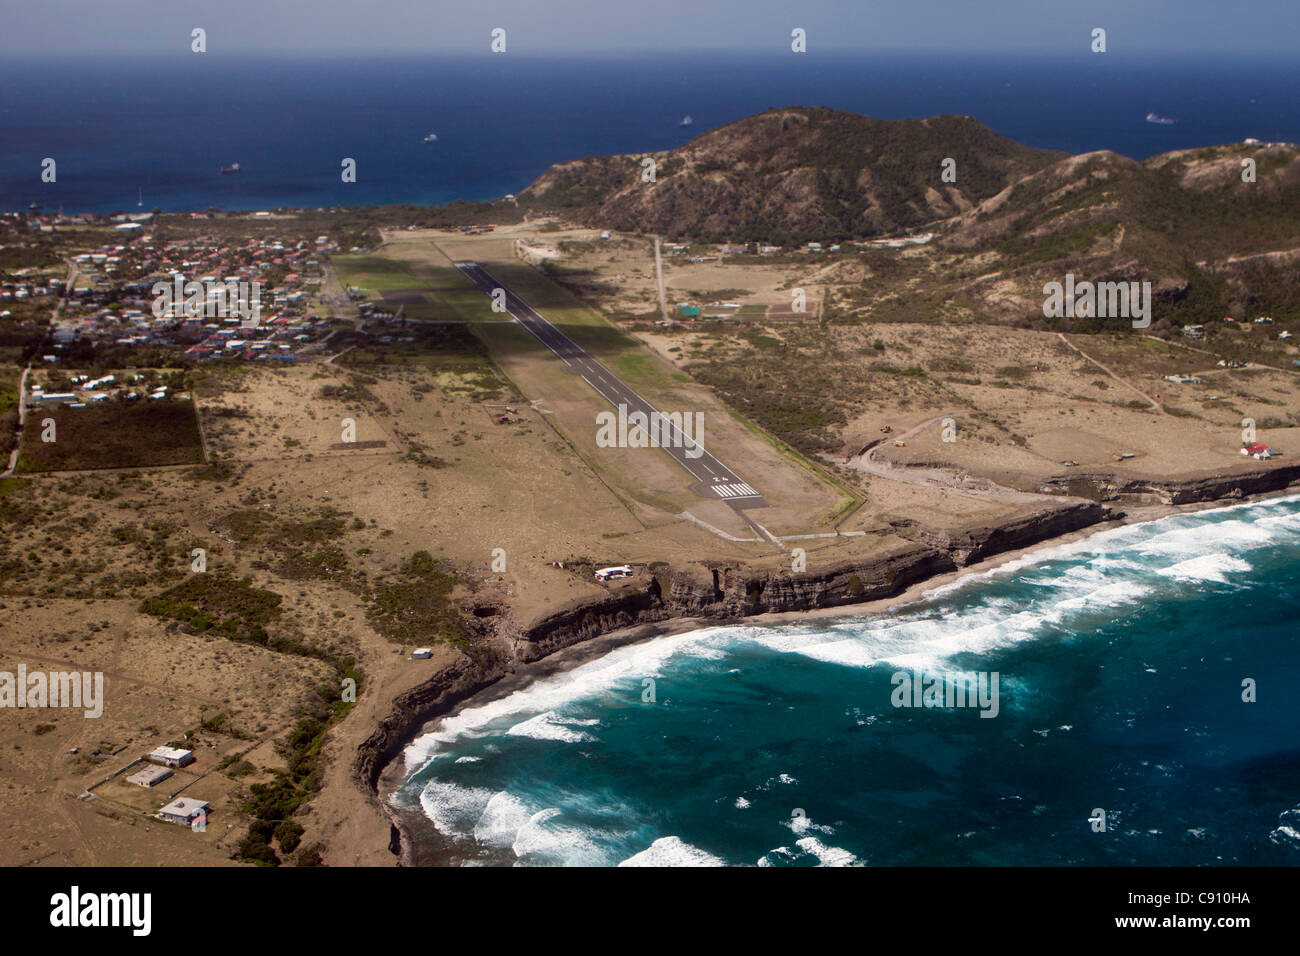 Den Niederlanden, Oranjestad, Sint Eustatius Insel, Niederländische Karibik. Blick auf Stadt und Flughafen. Luft. Stockfoto